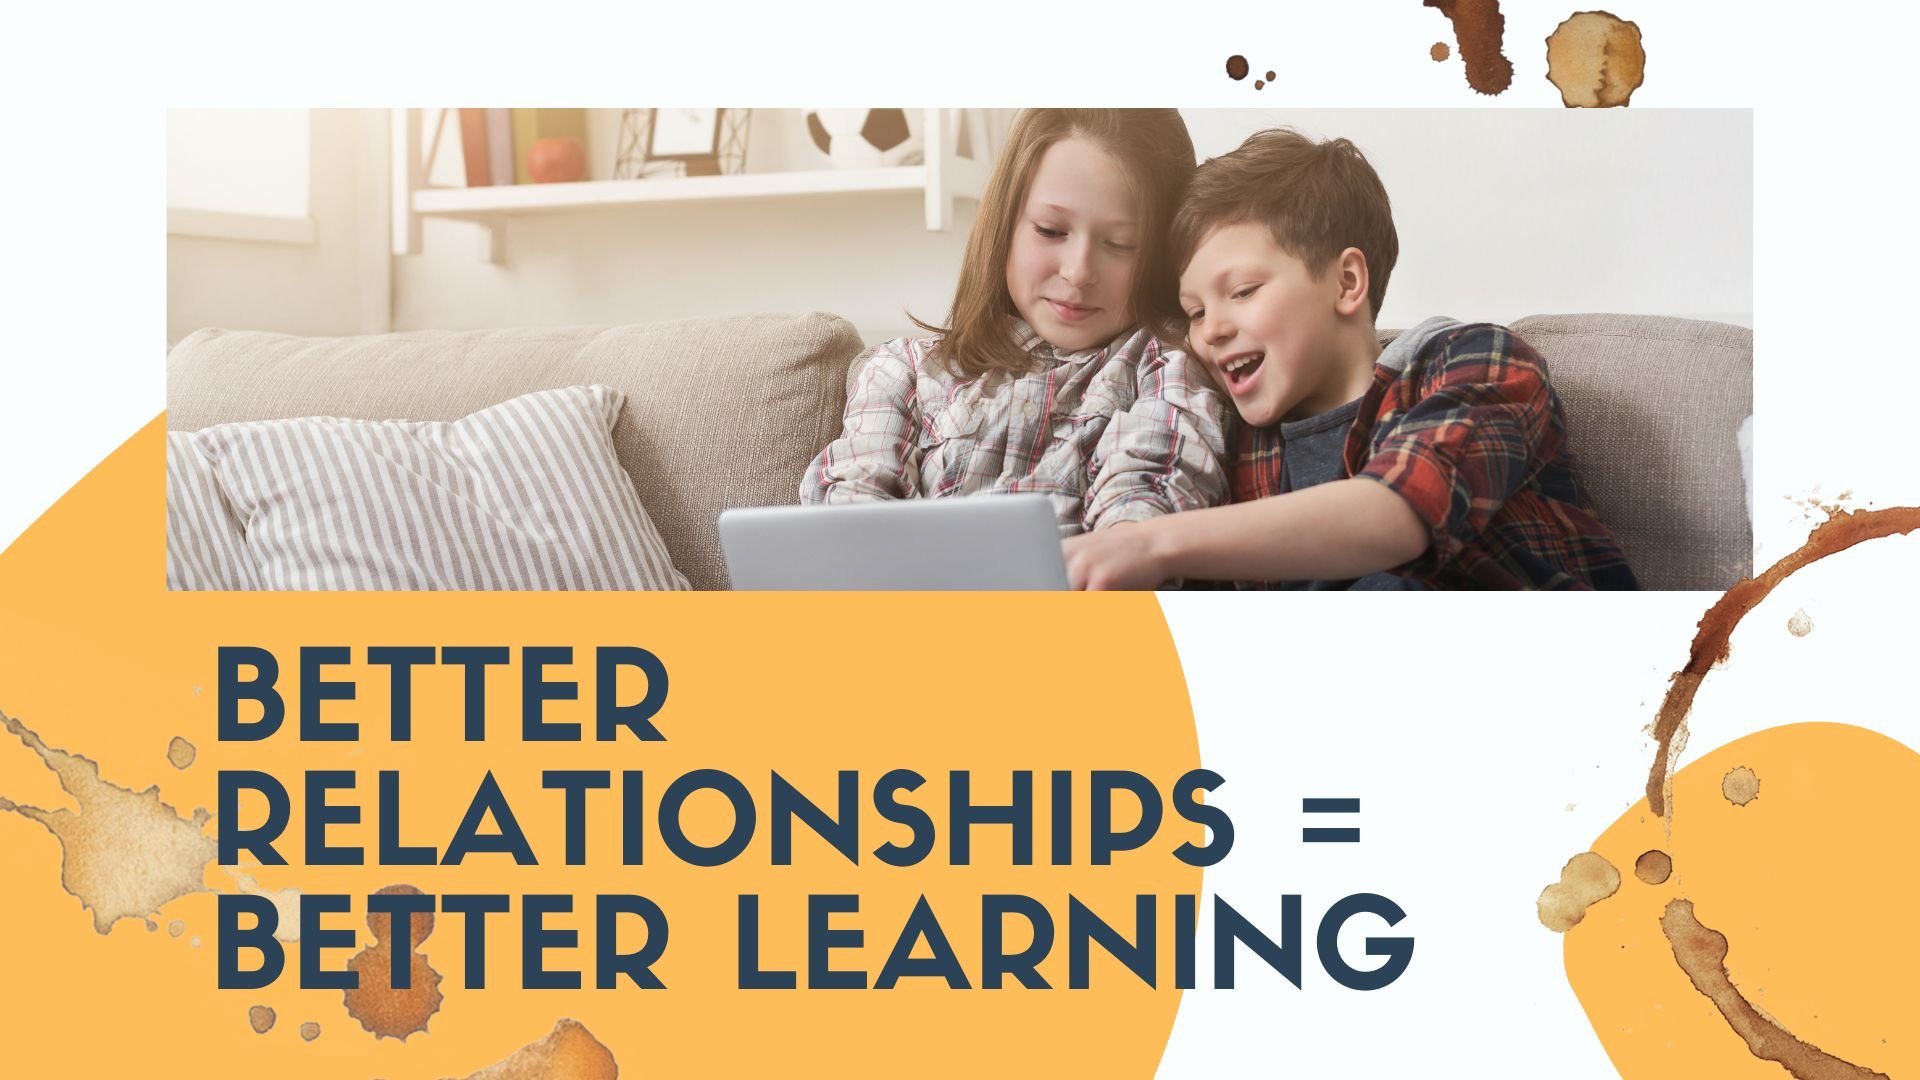 Better Relationships Enable Better Learning